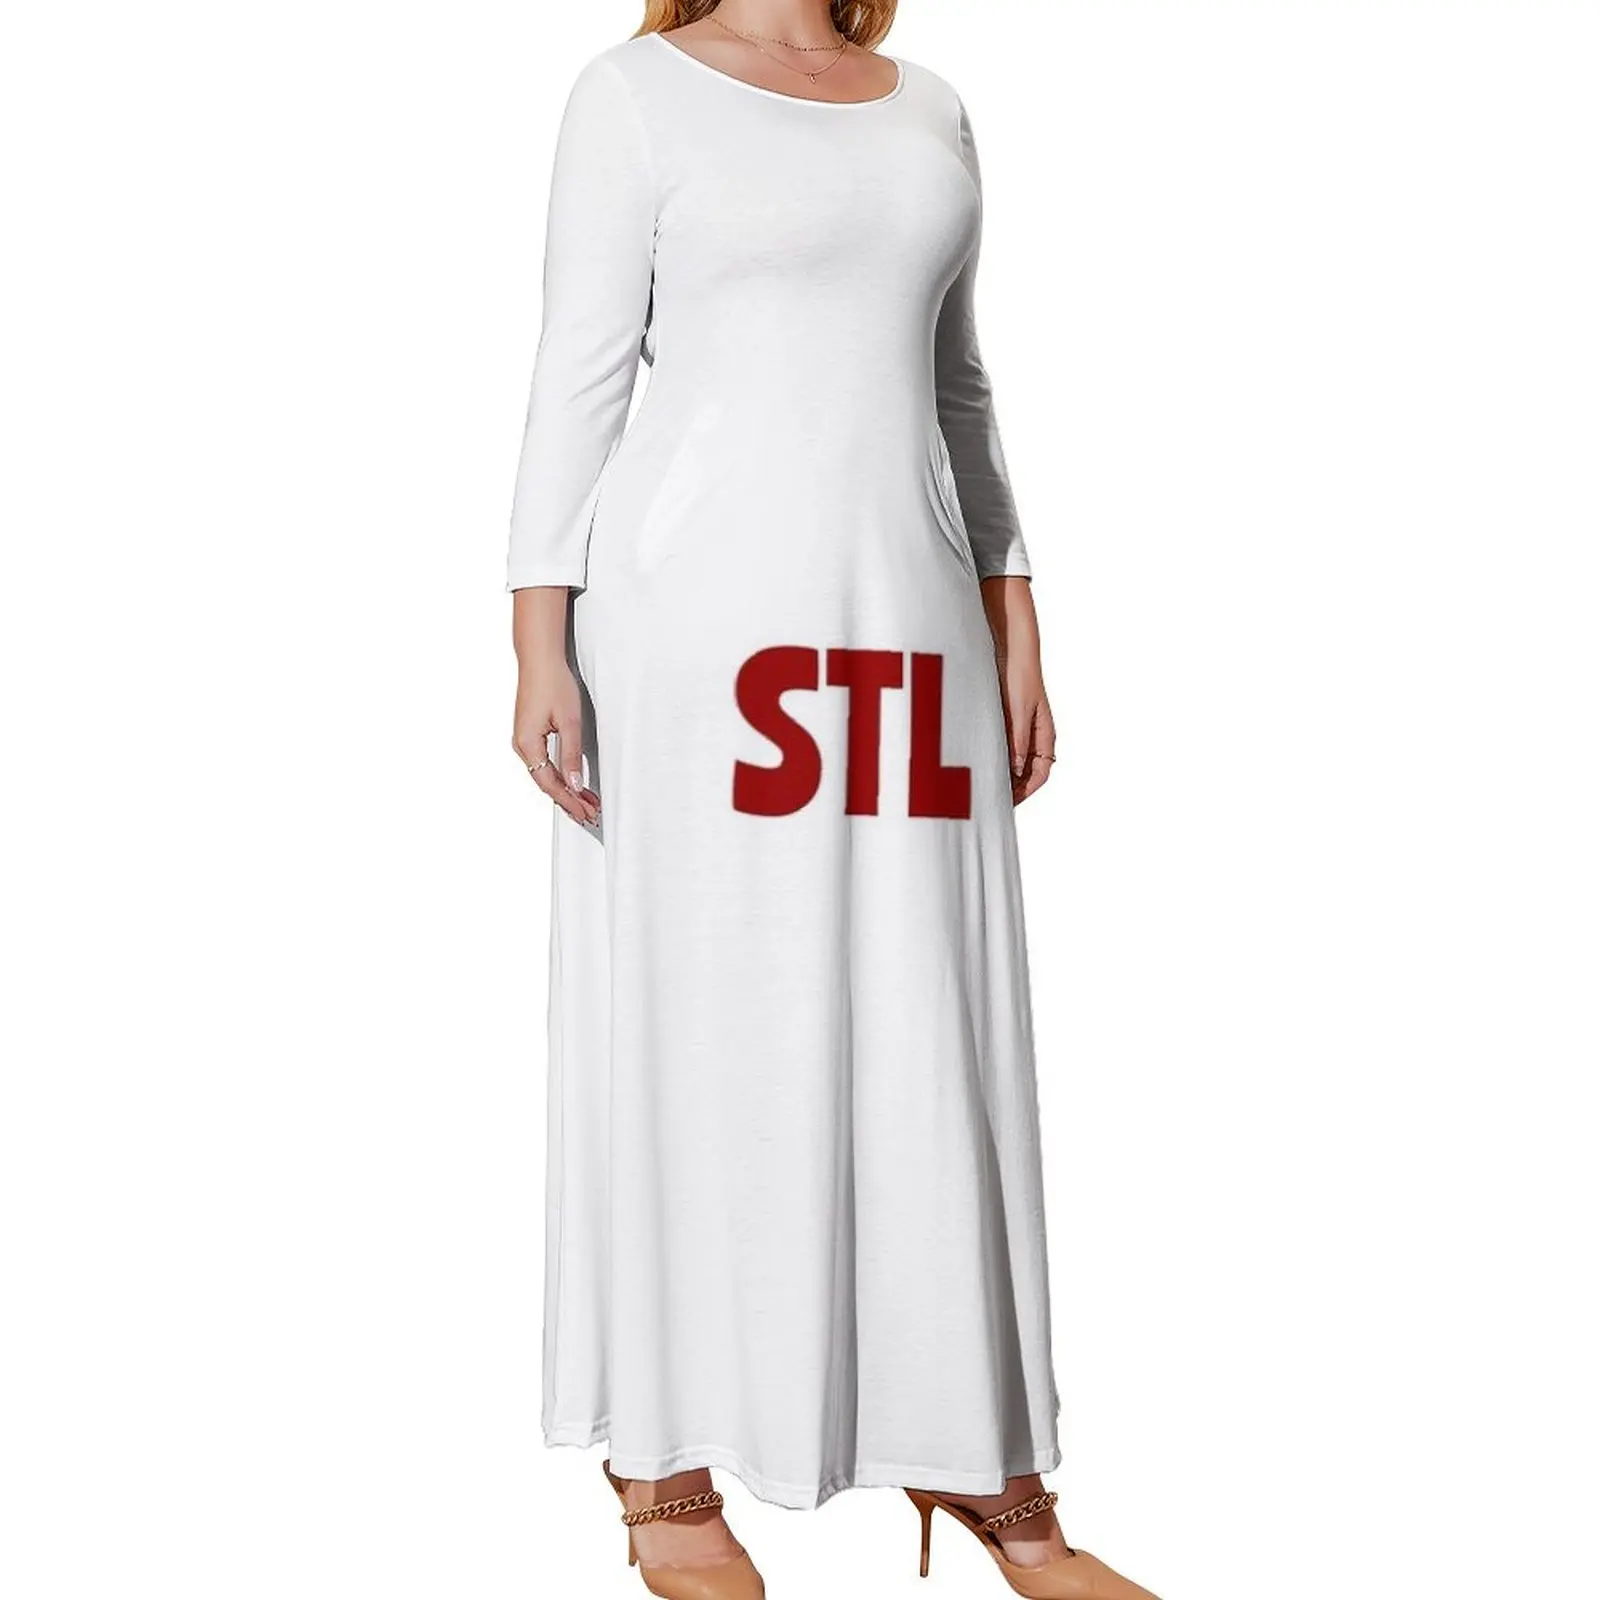 

Платье с длинным рукавом Saint louis, коктейльные платья, платья для выпускного вечера для беременных женщин